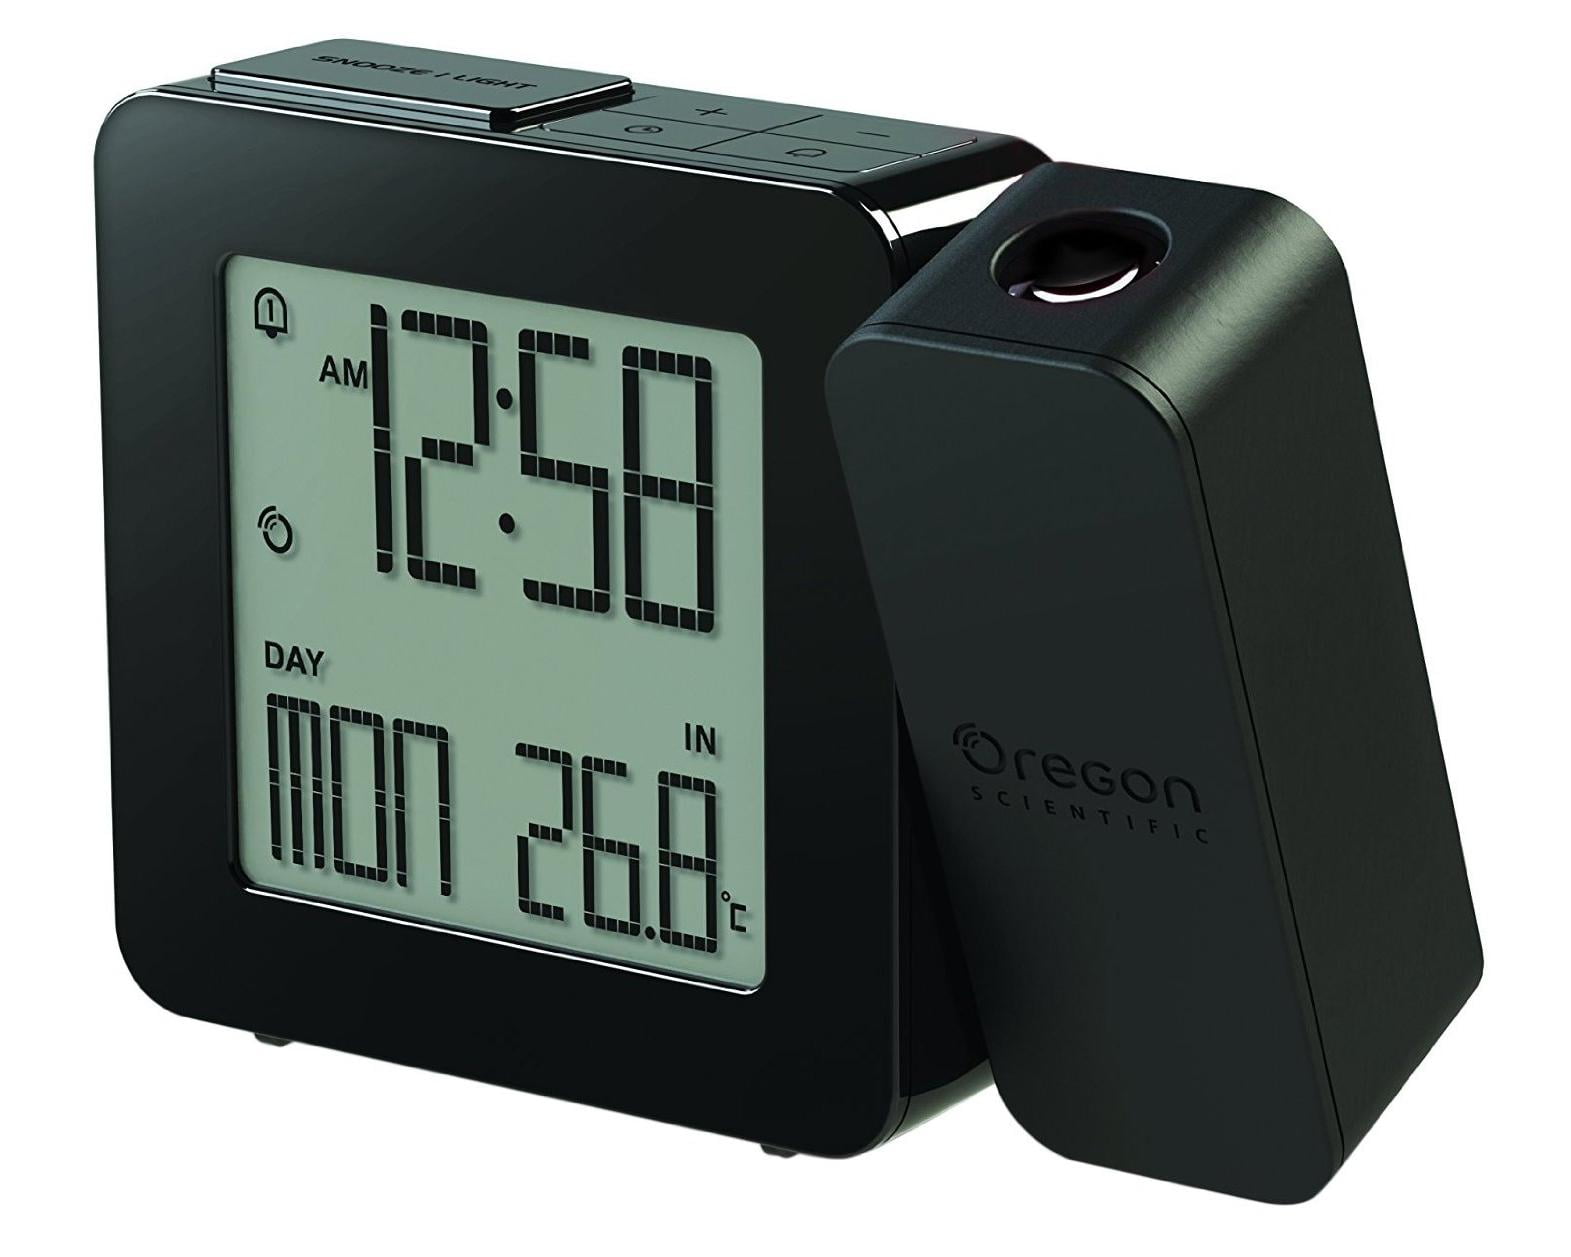 Oregon Scientific Alarm Clocks